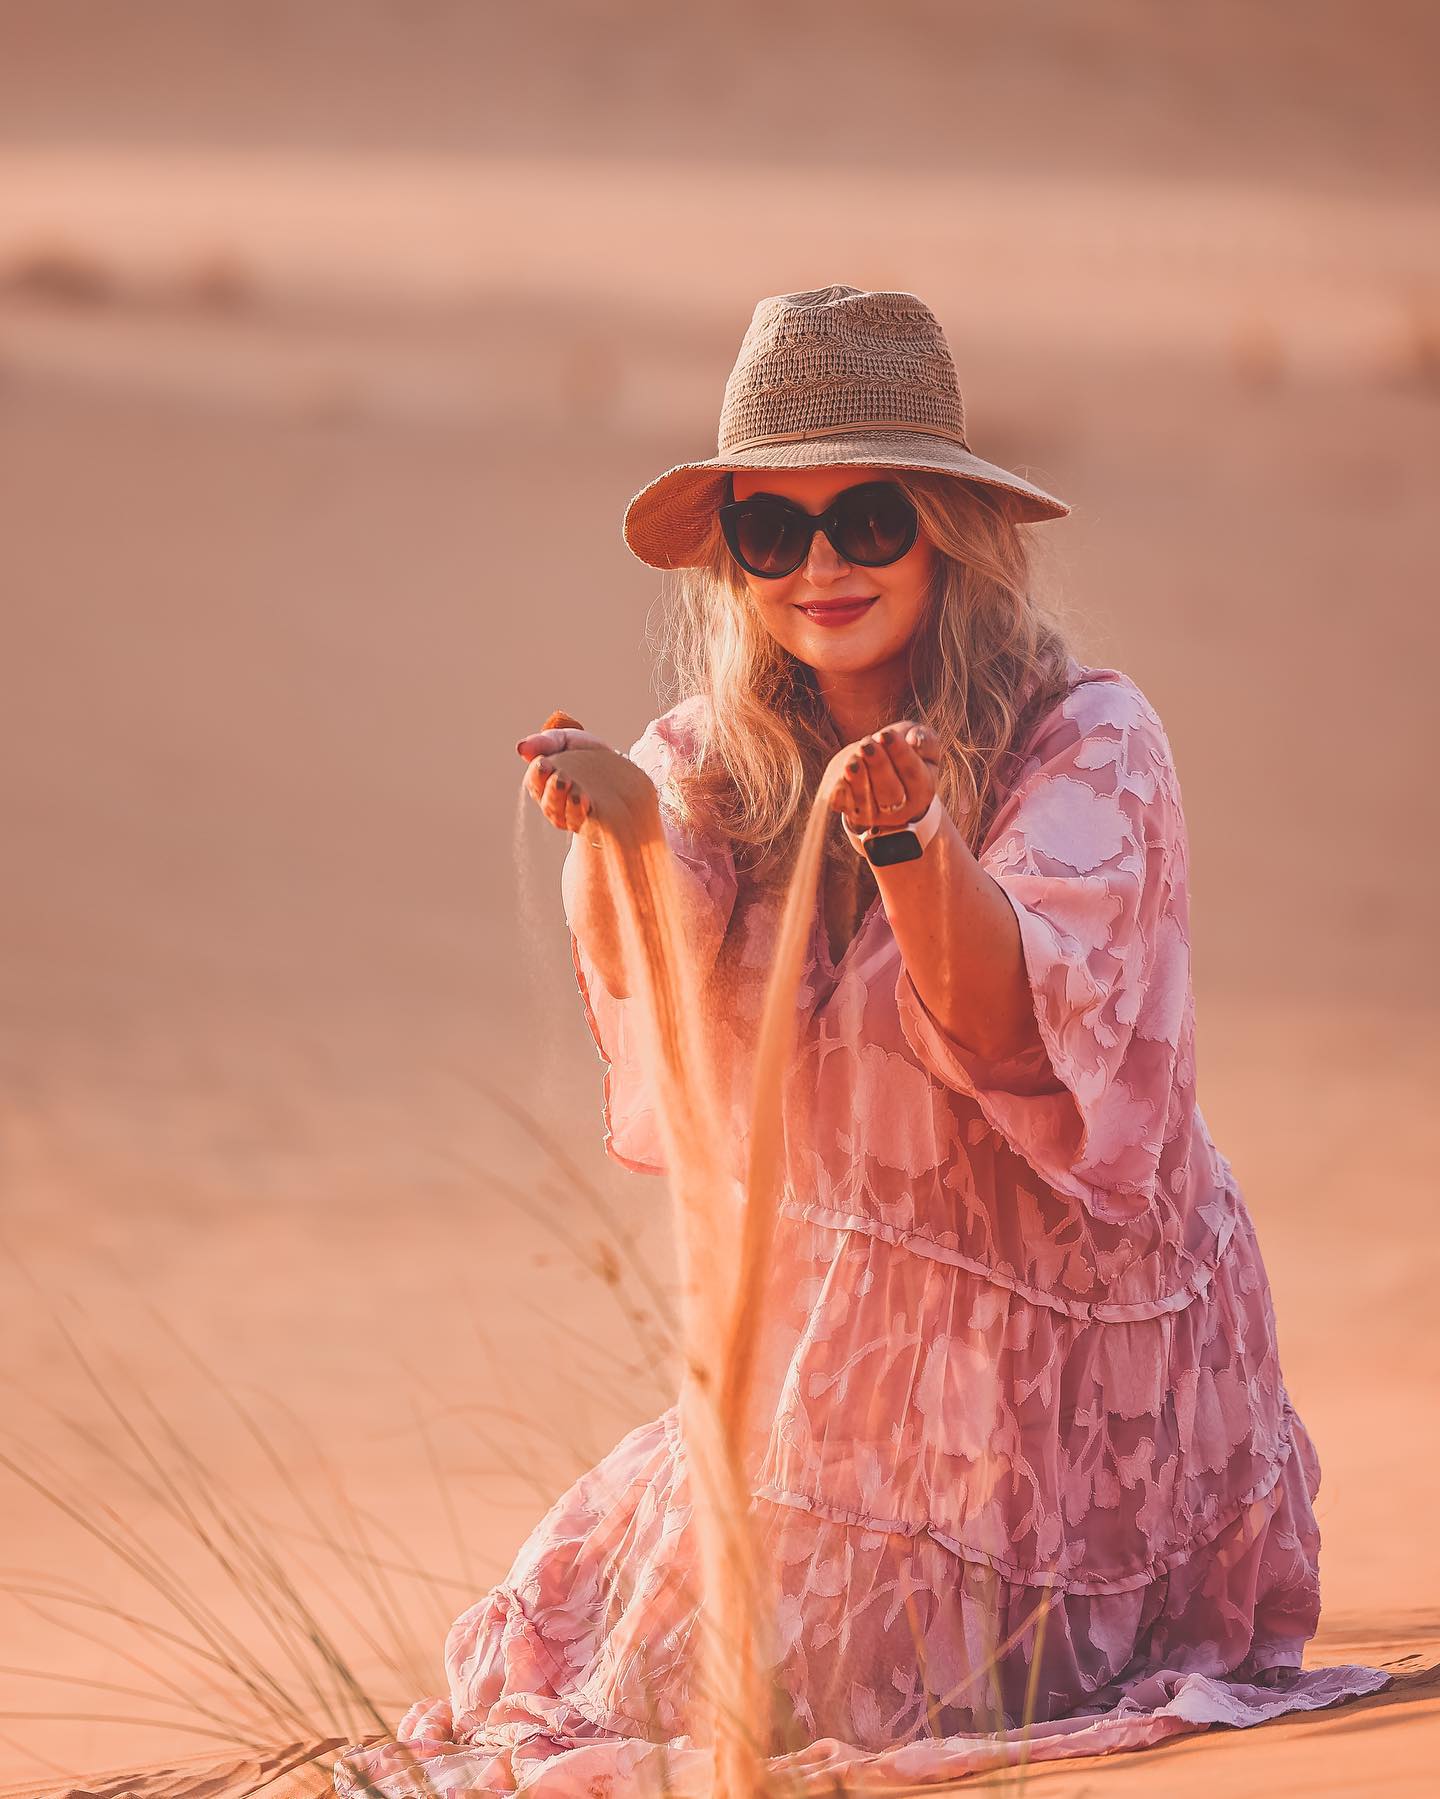 I love this desert 😍🌵 
.
The sand here is different 🌸 more orange…
.
Uwielbiam ta pustynie, kolor piasku tu jest inny, cudowny!!! To moja ulubiona pustynia w Emiratach 😍 wracamy tu regularnie! 
.
.
Wracasz do miejsc ktore lubisz?
.

#anantaraqasralsarab #anantarajourneys #anantarahotels #inabudhabi #abudhabilife #kobietazklasa #kobietazpasja  #zjednoczoneemiratyarabskie #girllikeme #kobiecafotoszkoła #womanbelike #womanpassion #gogogirls #motherhoodstyle #iamamother #motherhoodandme #polishmum #polishgirl #polishwoman #motherhood #bloggerlifephotos #travelphotography  #polskiedziewczyny #instamateczki #matkafotografka #okiemmamy #wearetravelgirls #whatsondubai #polkinaobczyznie #matkablogerka